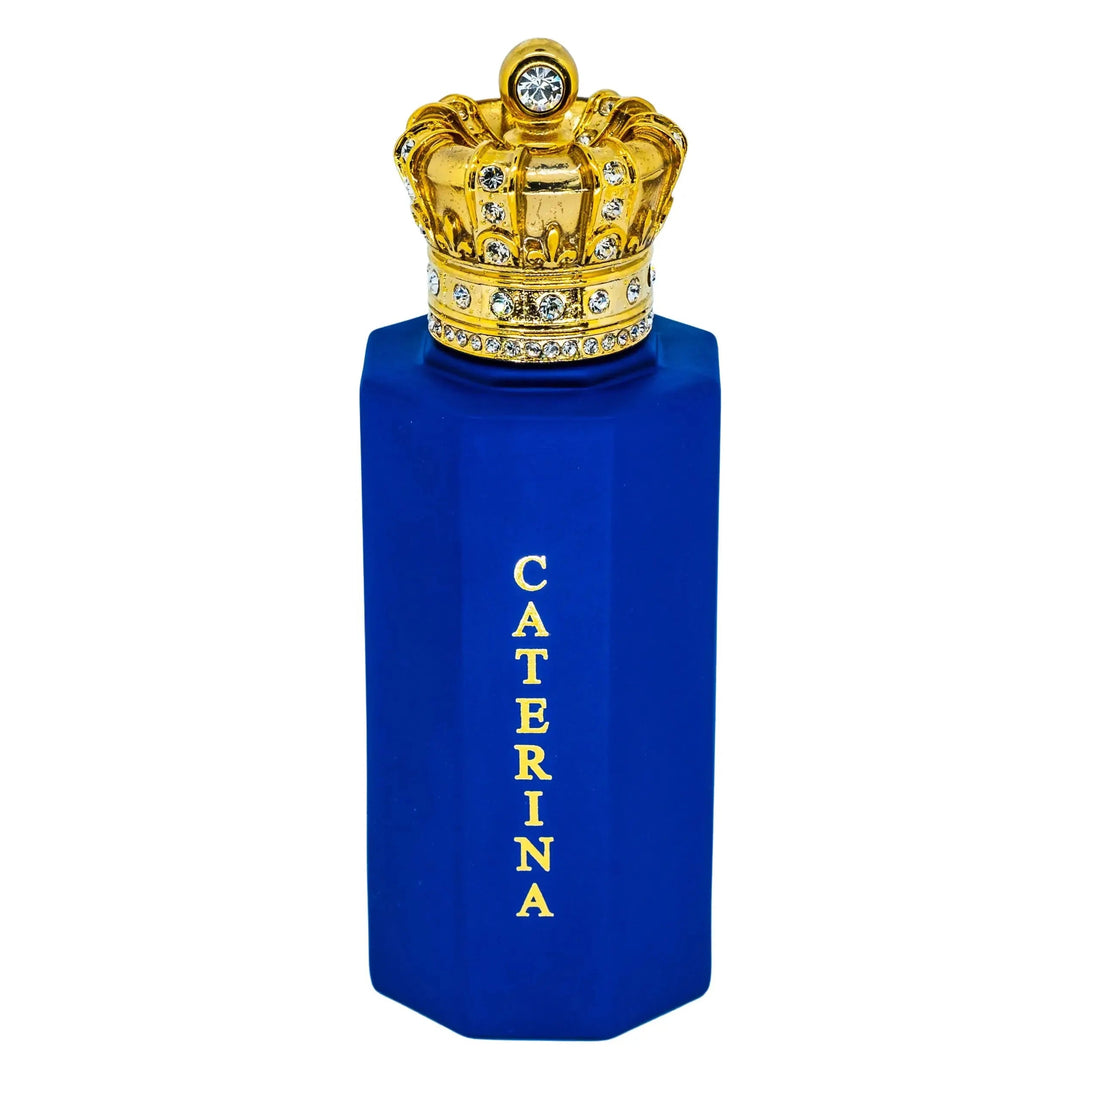 Caterina Corona Real - 50 ml